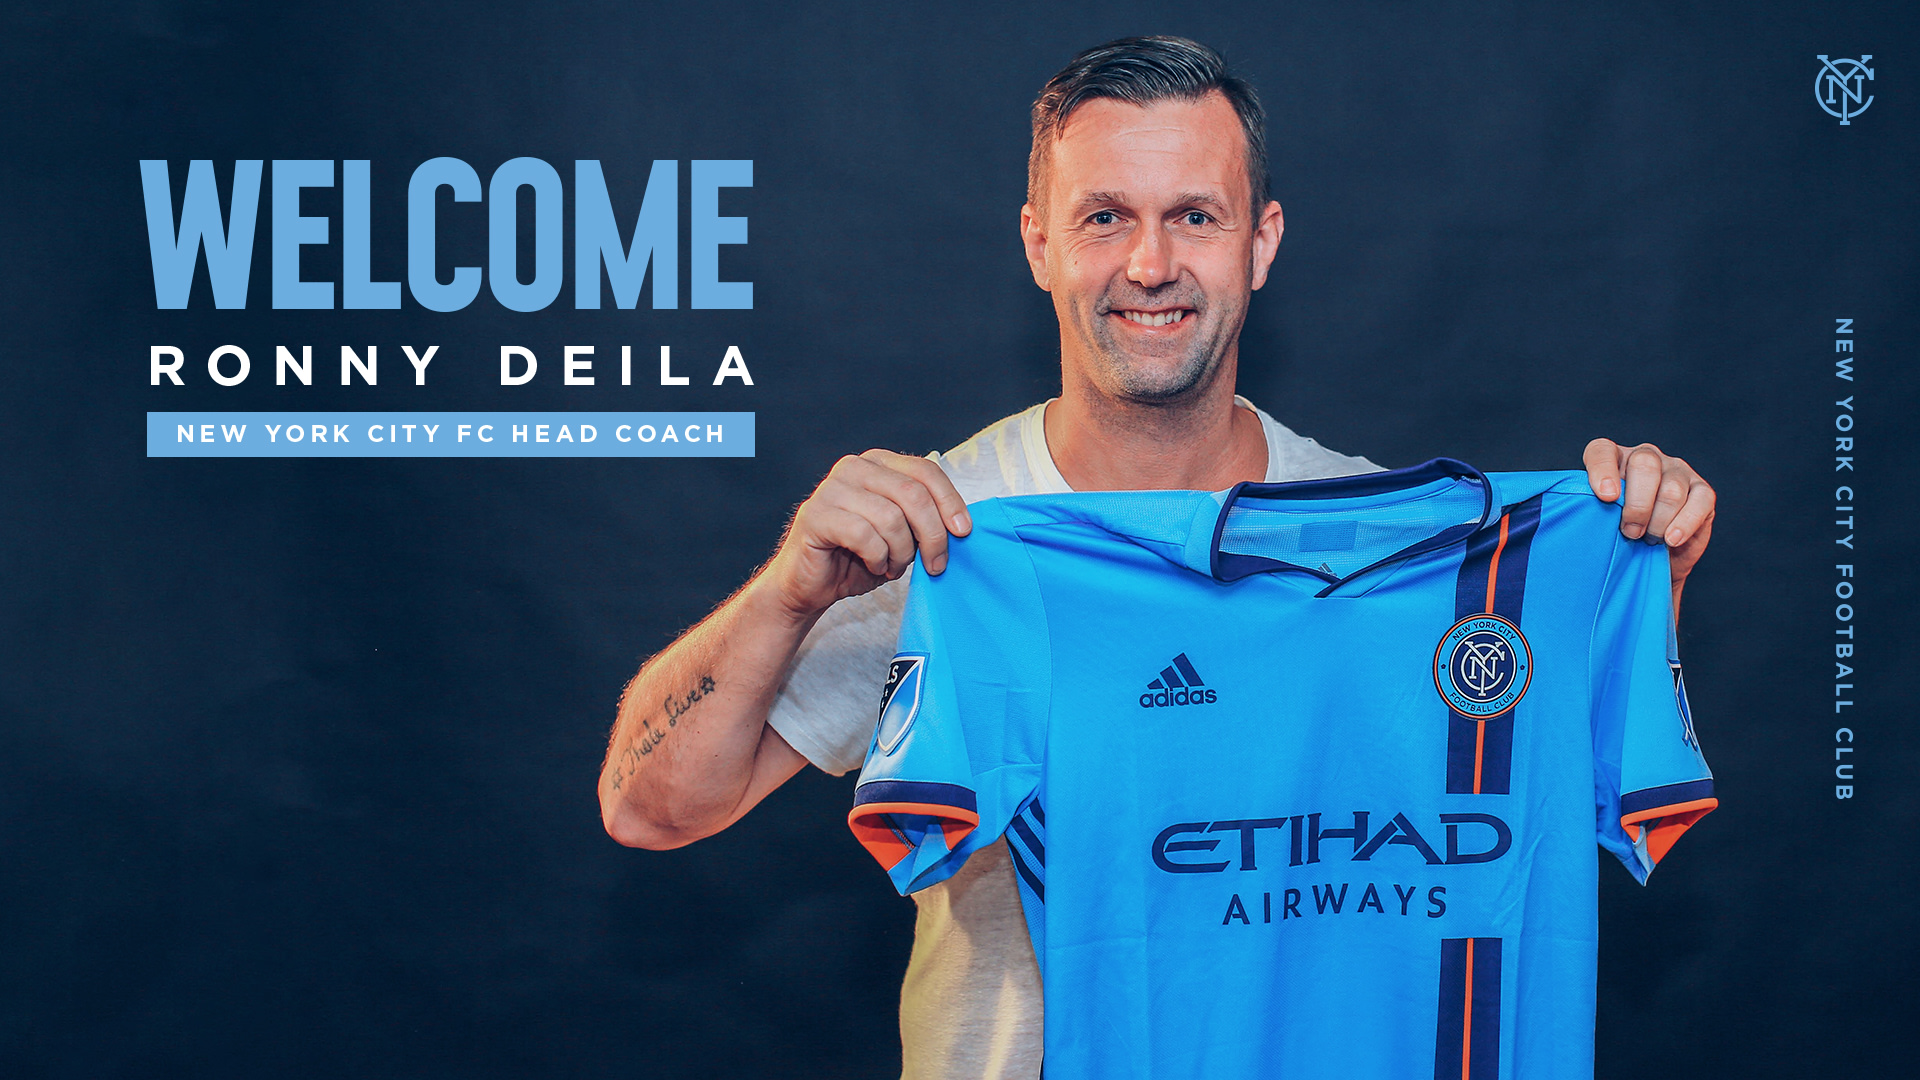 Ronny Deila Named New York City FC Head Coach | New York City FC